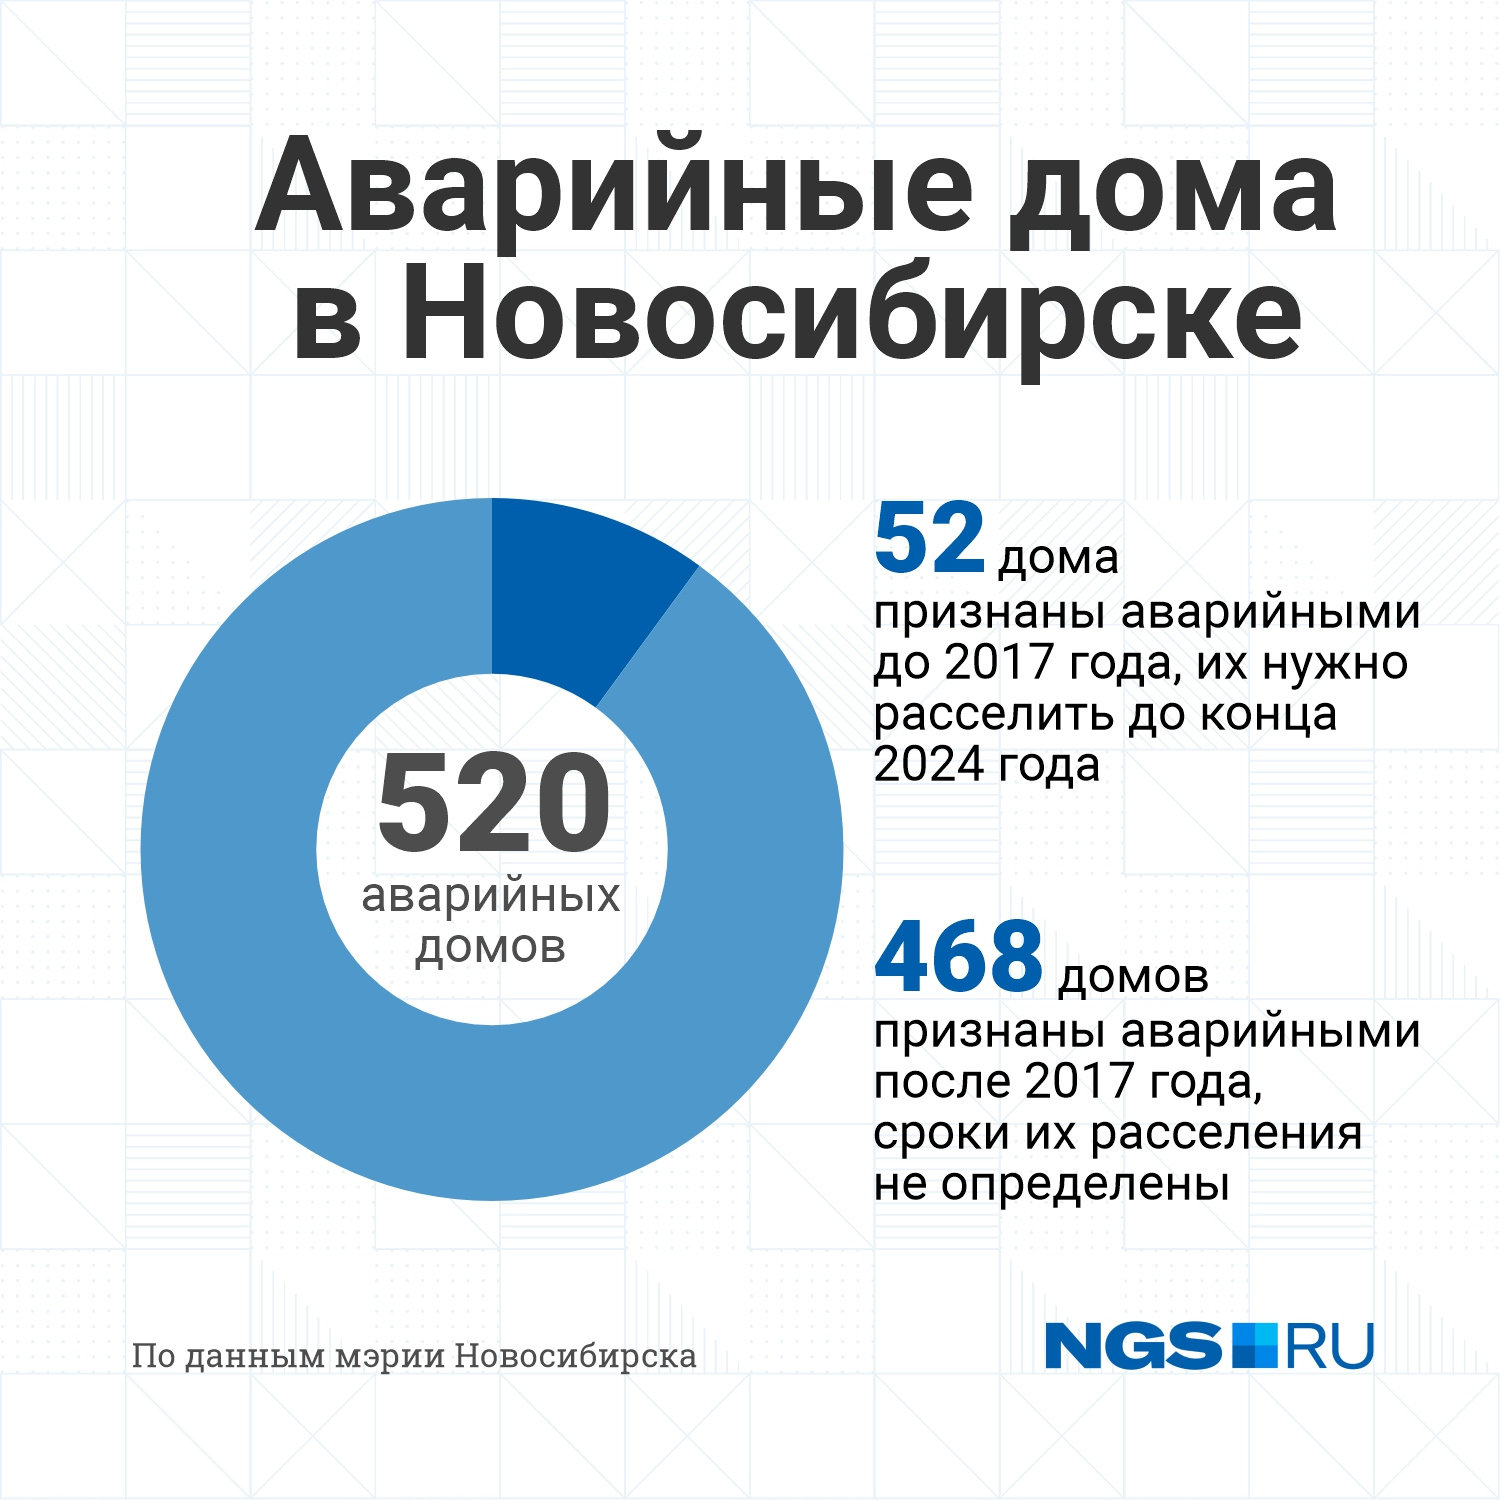 Мэрия Новосибирска расселяет подлежащие сносу аварийные дома в два этапа. Первая очередь — признанные аварийными до 2017 года, потом — остальные